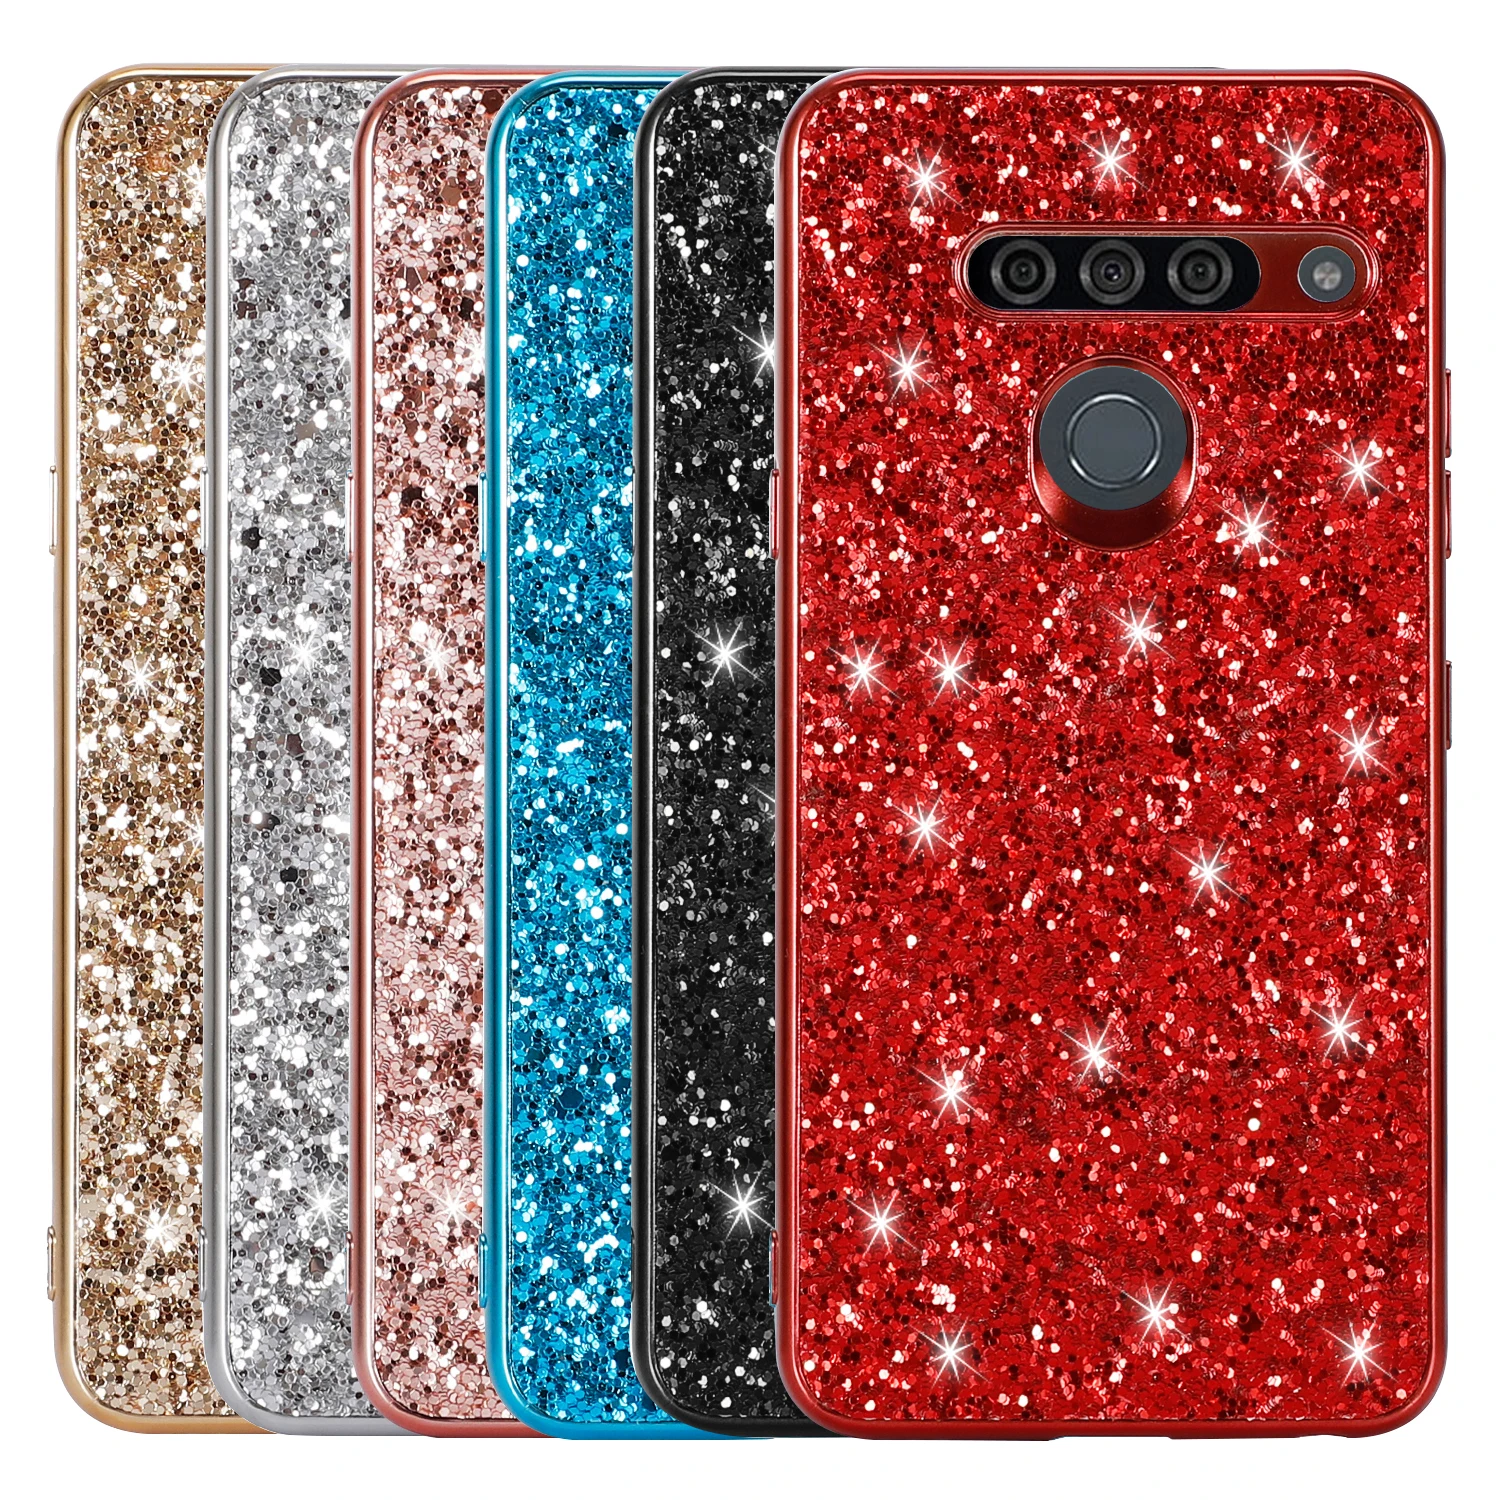 Case For LG G8s Thinq Case 6.2'' Case Bling Glitter Sequins Cover For LG G8S Thinq Phone Cover For LG G8S G8 S G 8S